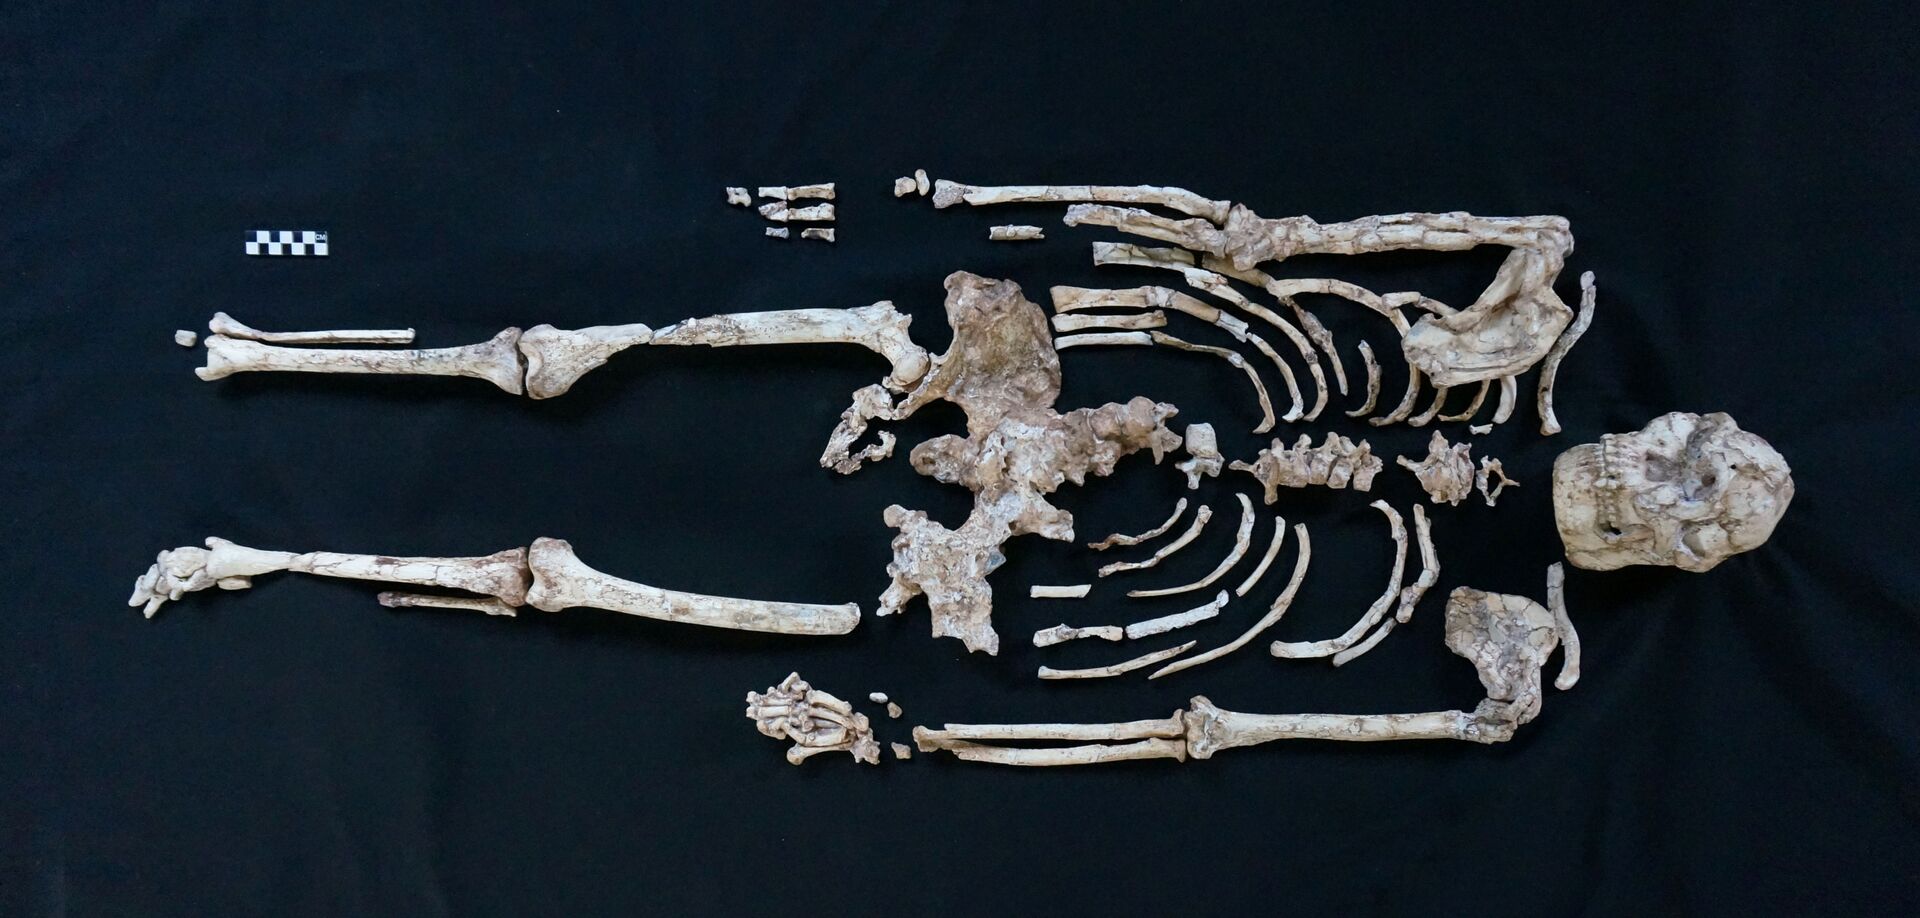 Fóssil de 'Little Foot' revela enigmas de antepassados dos seres humanos (FOTOS) - Sputnik Brasil, 1920, 02.03.2021